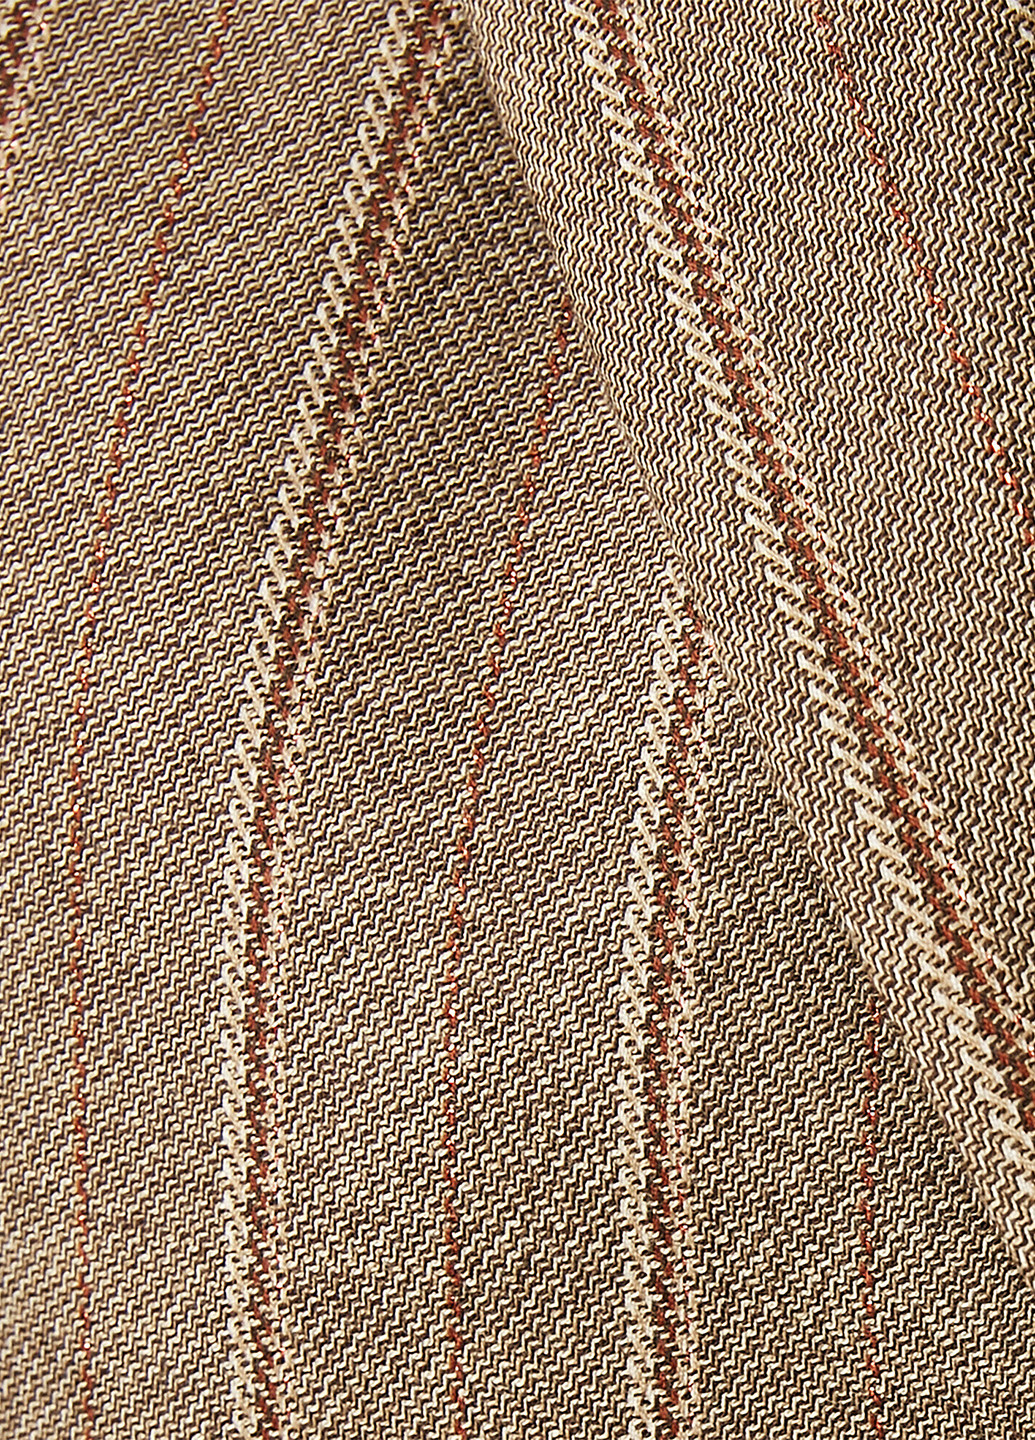 Светло-коричневый женский жакет KOTON полосатый - демисезонный